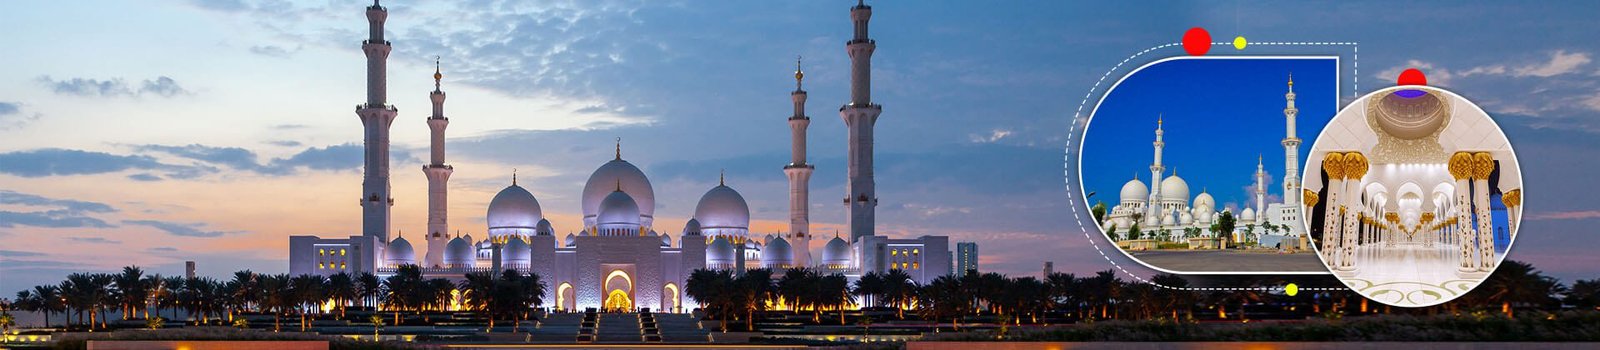 Abu Dhabi Sheikh Zayed Mosque Tour